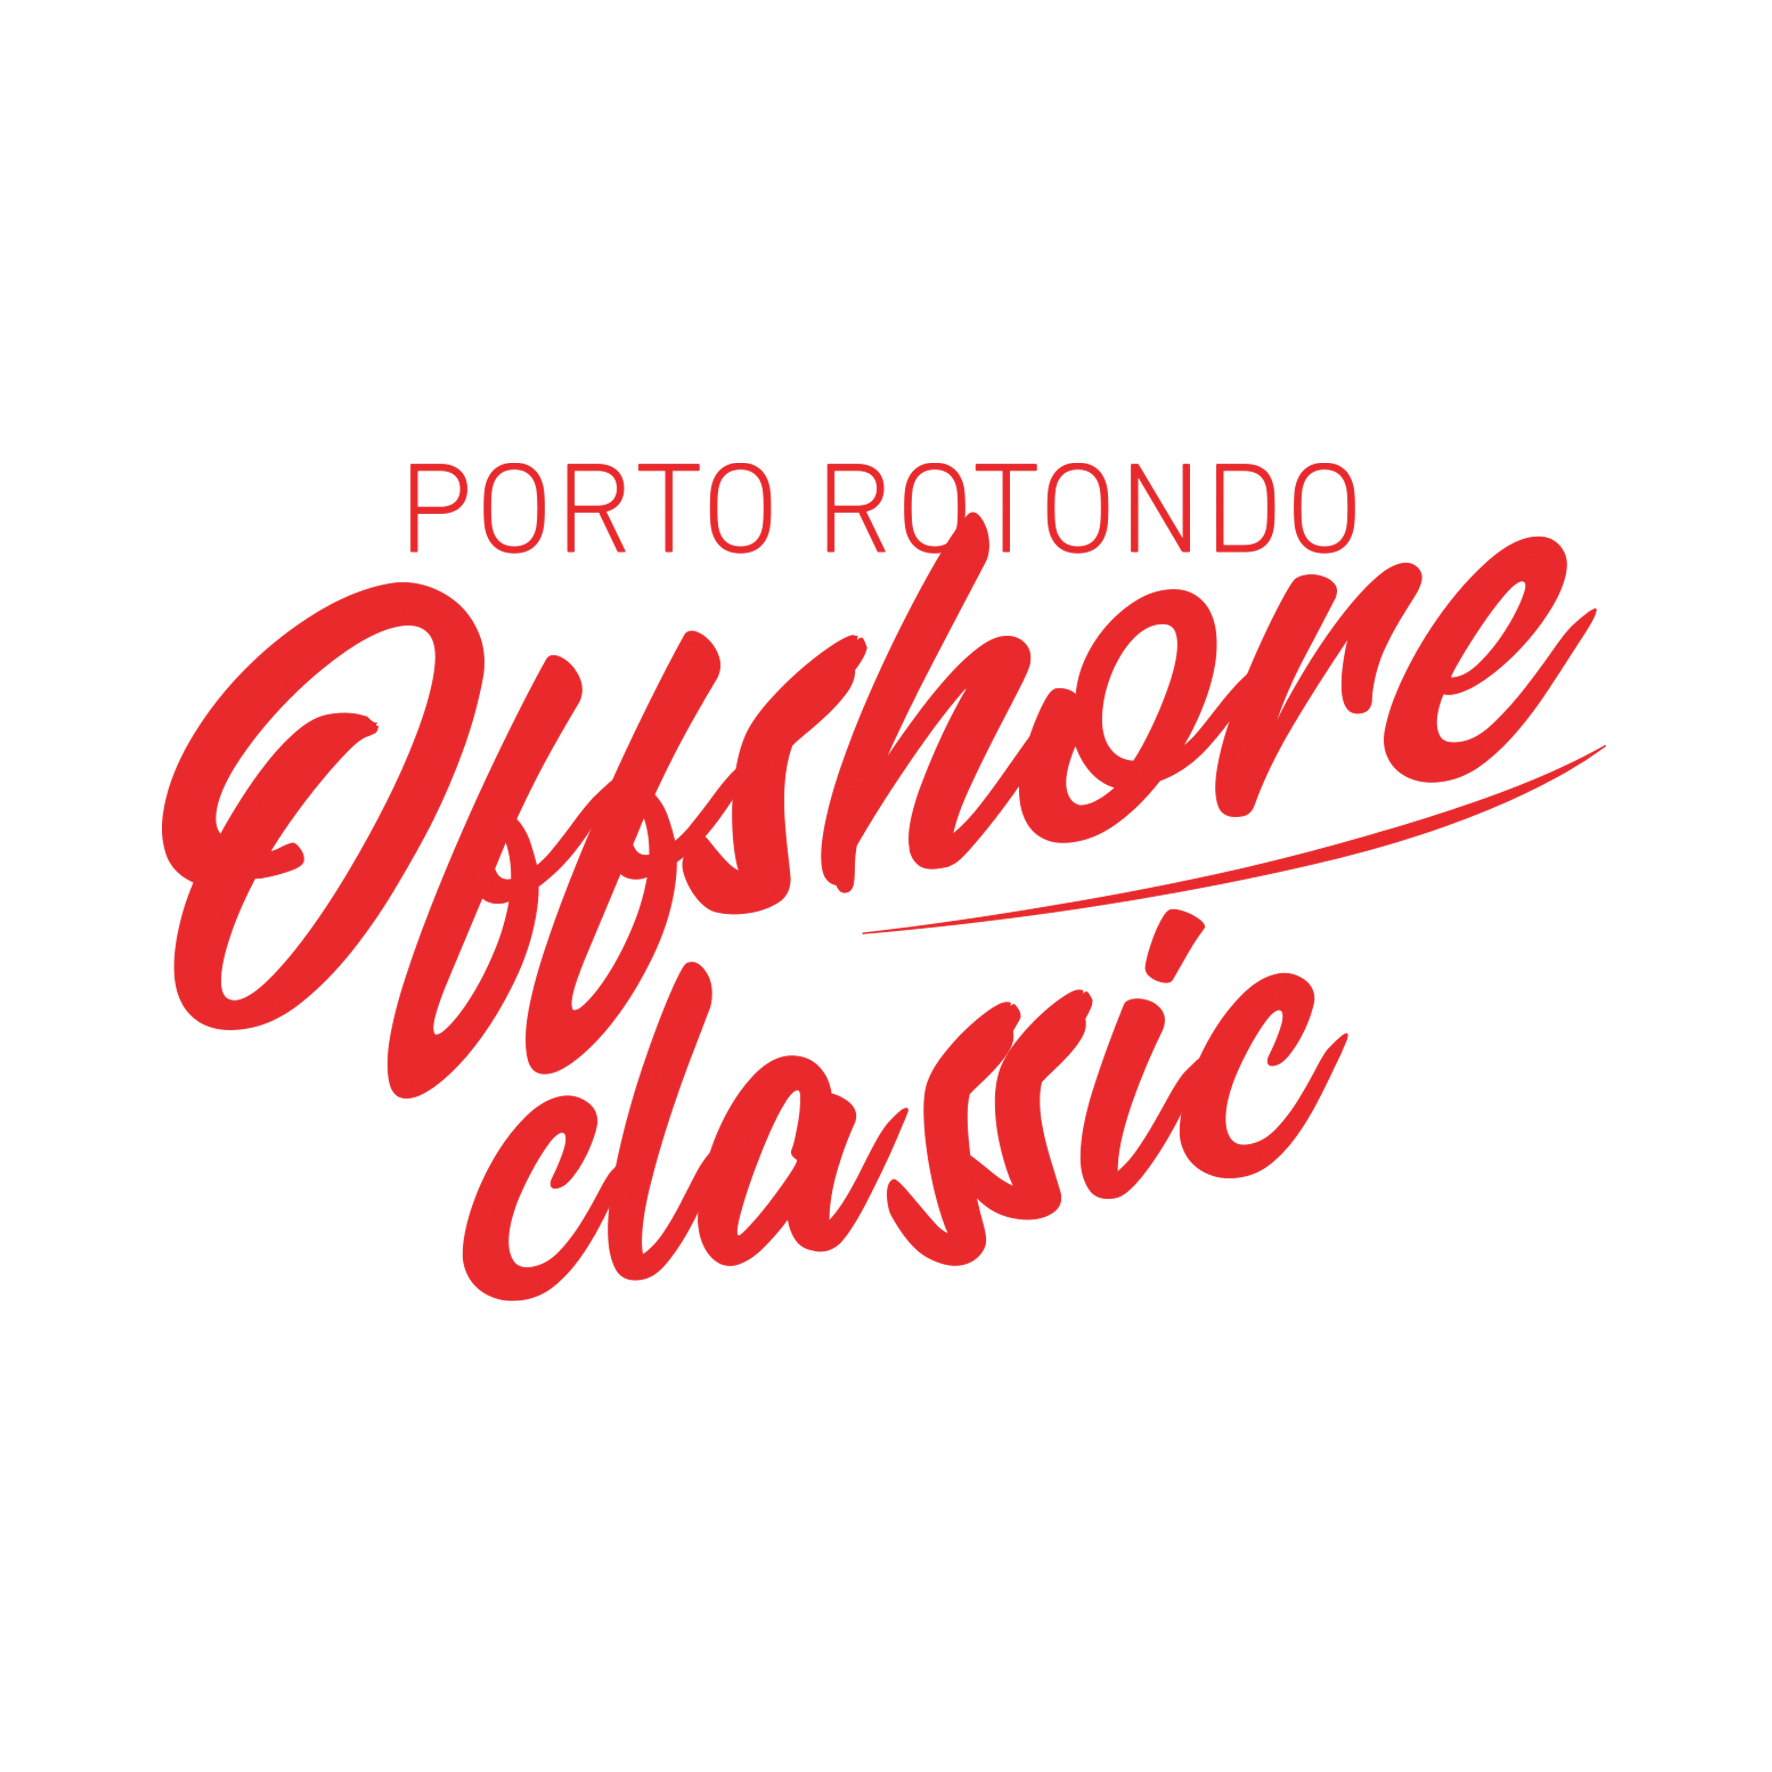 Logo PORTO ROTONDO OFFSHORE CLASSIC